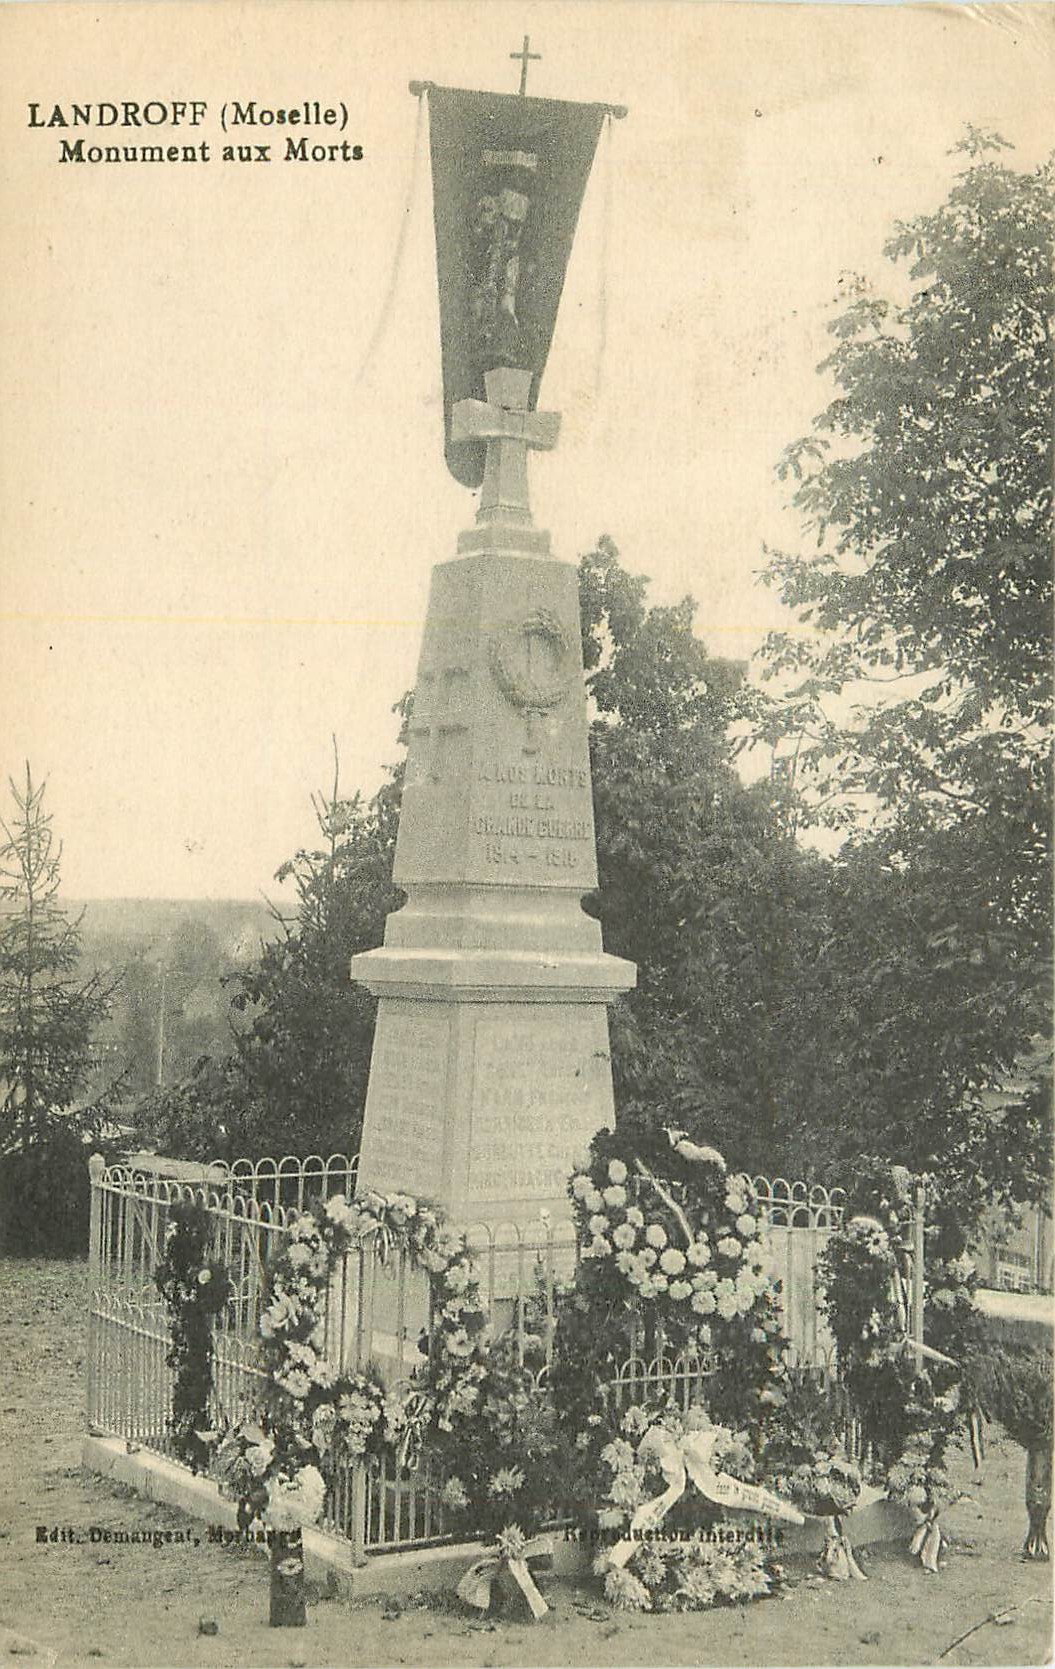 57 LANDROFF. Monument aux Morts 1927